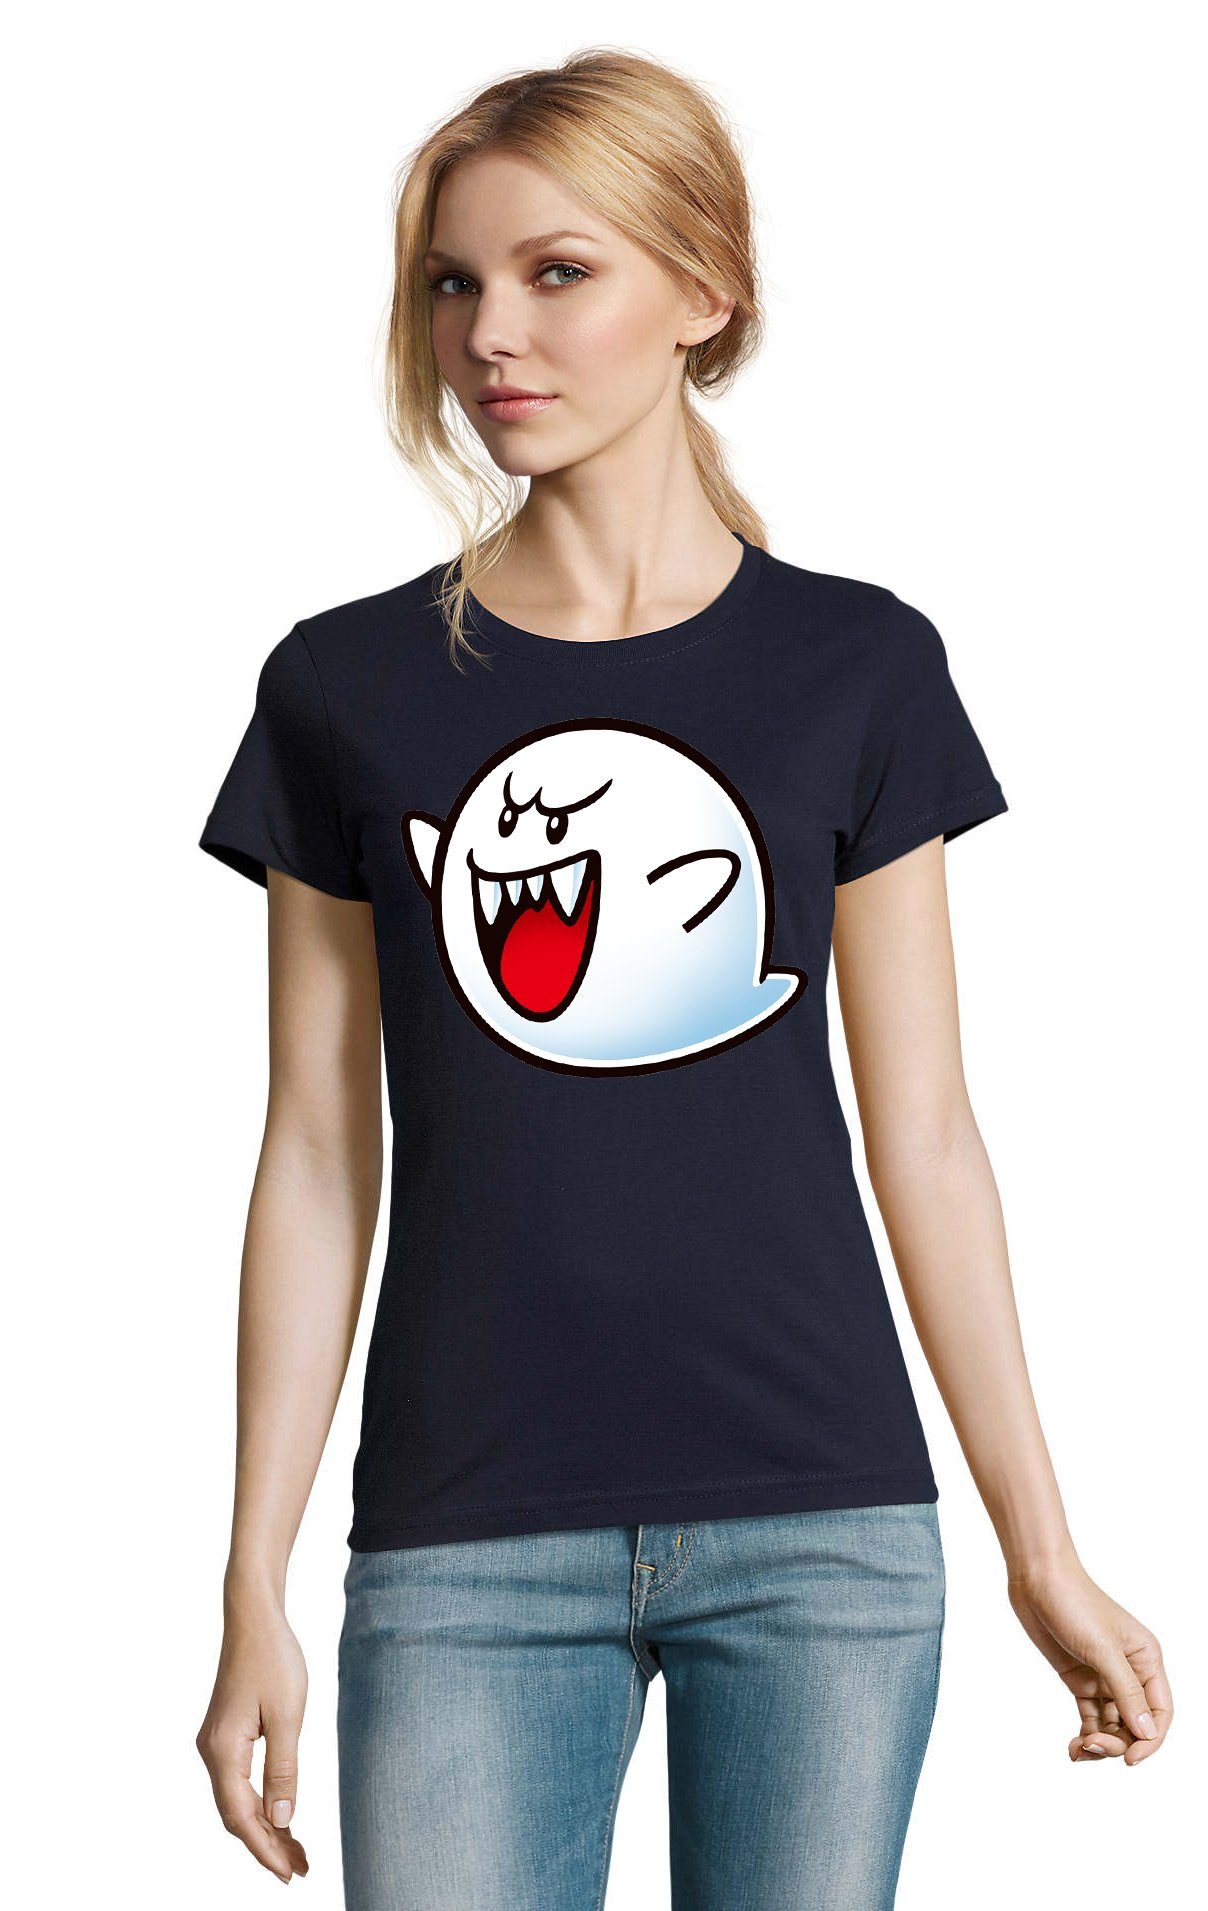 & Nintendo Boo Gespenst Blondie Super Navyblau T-Shirt Damen Brownie Geist Mario Konsole